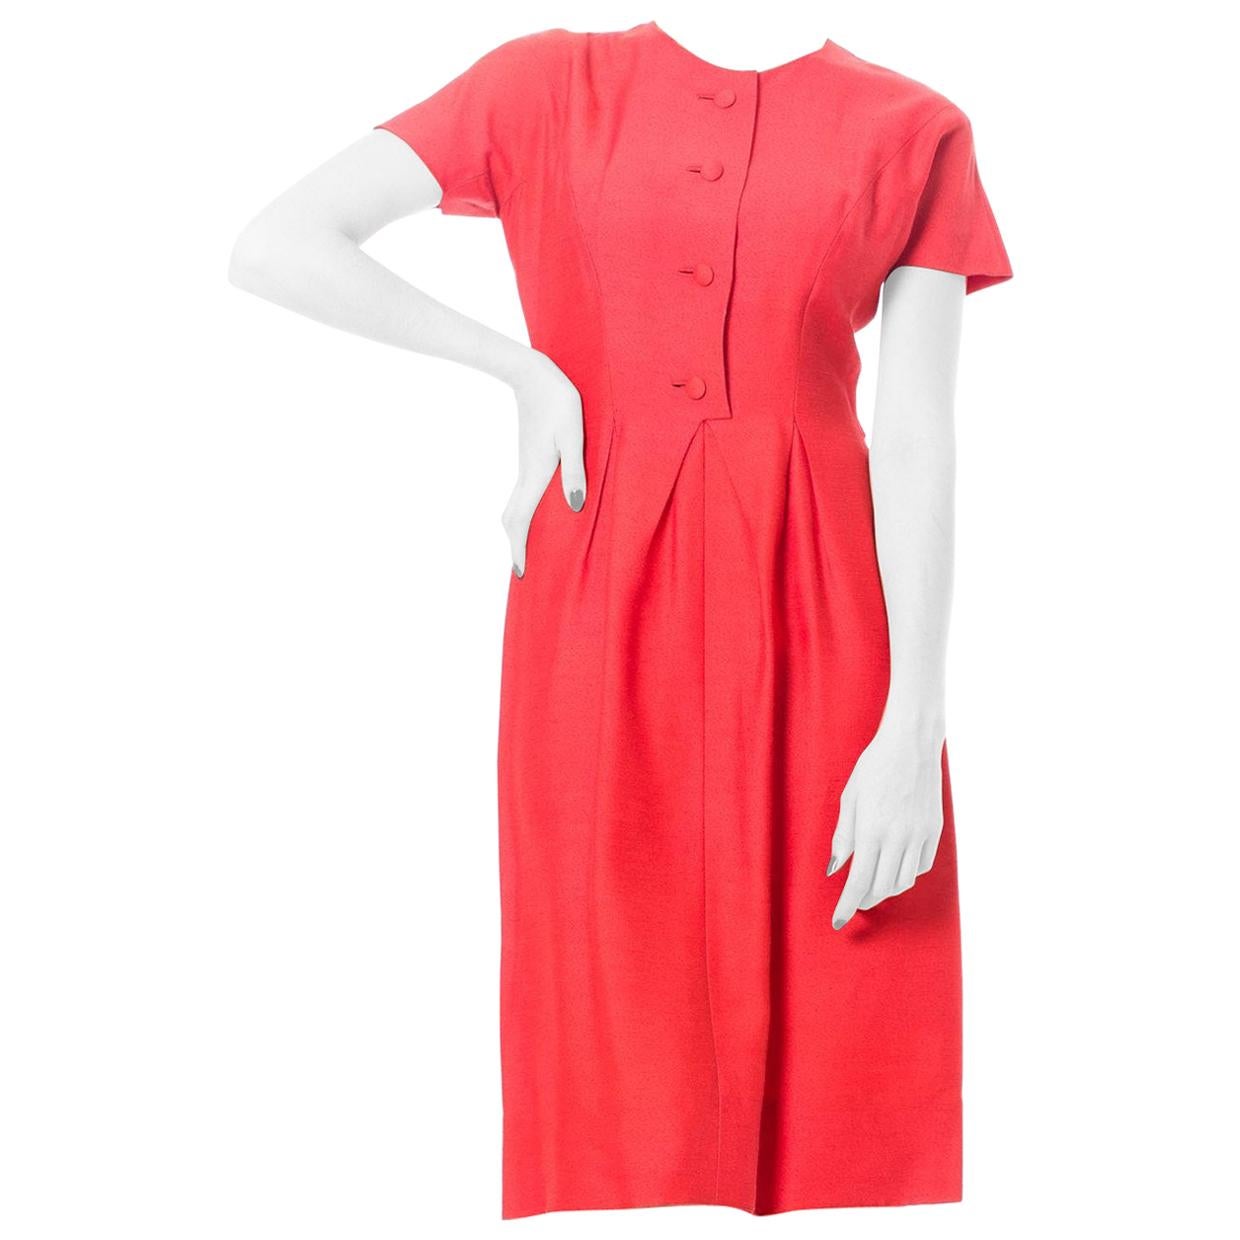 MAGGY ROUFF Persimmon Rotes Tageskleid aus Wollmischung mit Knopfleiste und plissierter Taille, 1960er Jahre